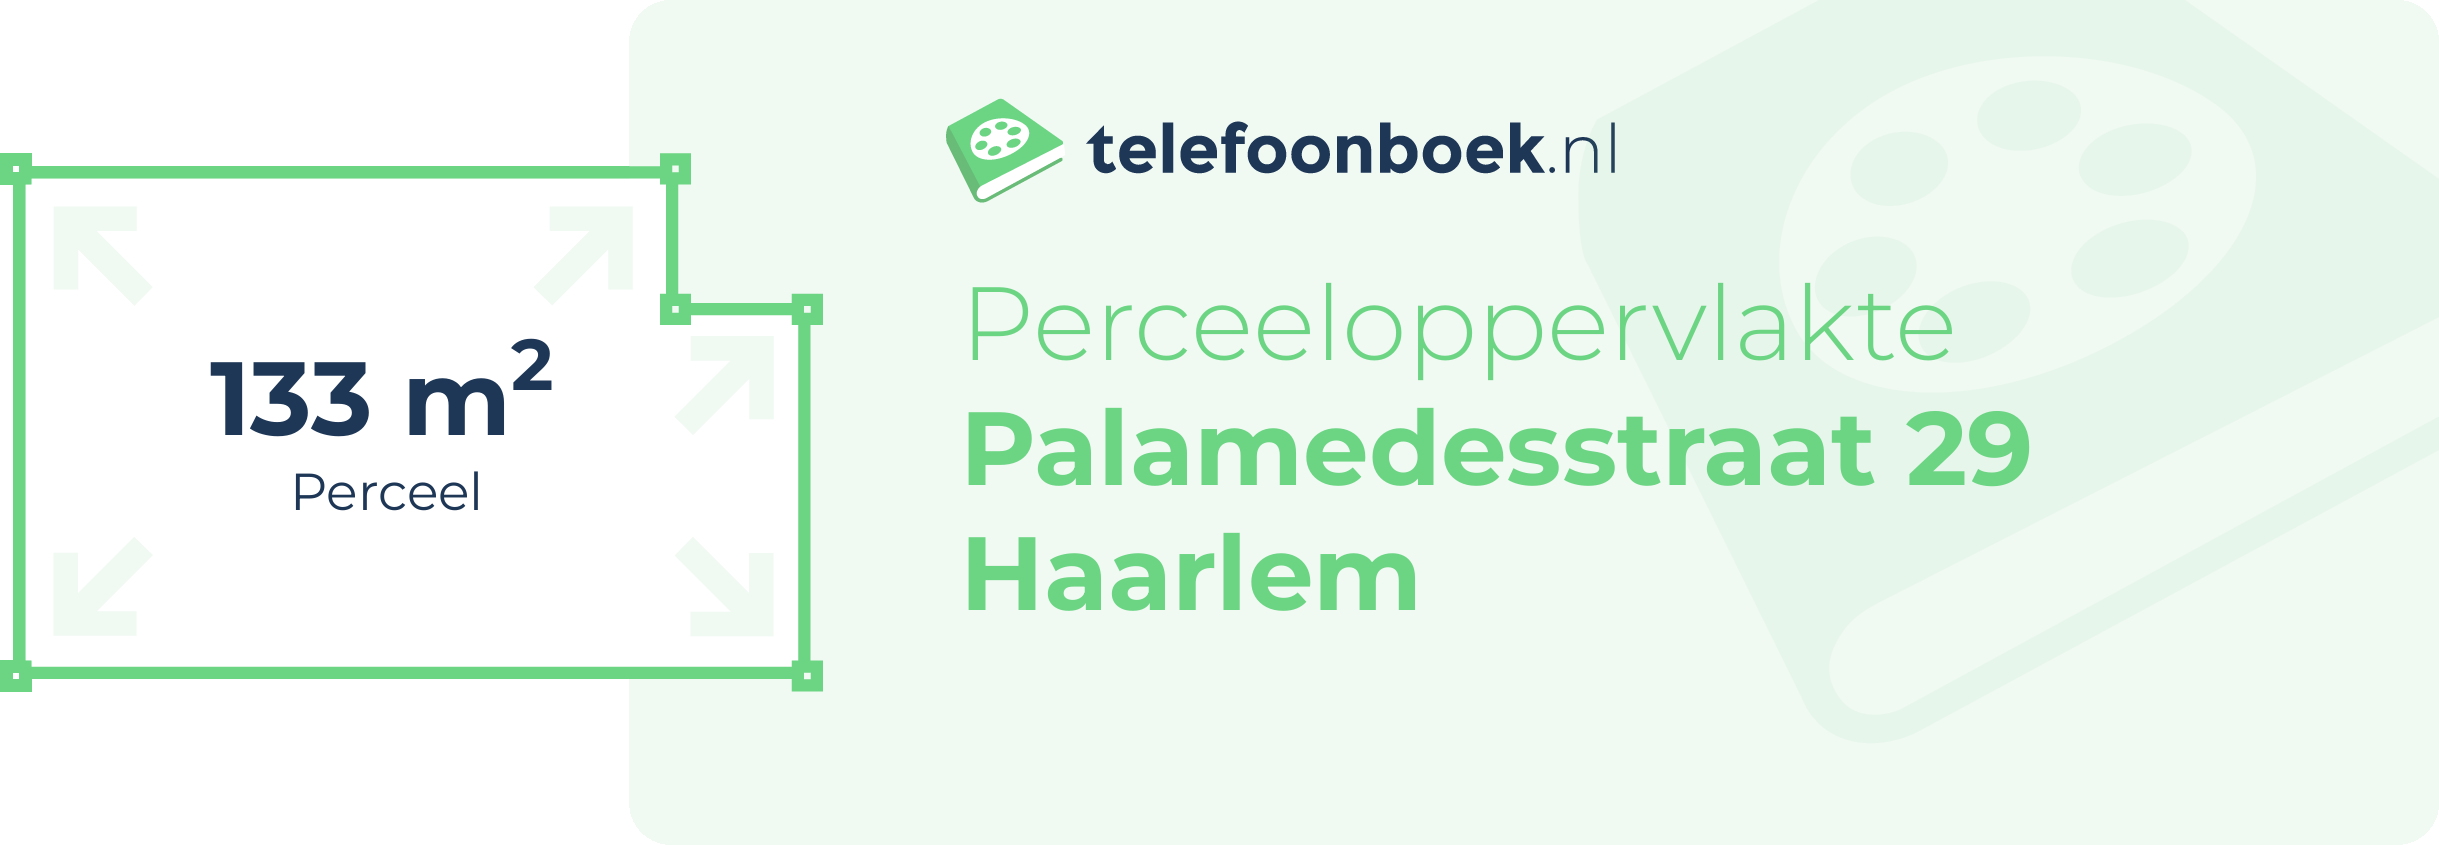 Perceeloppervlakte Palamedesstraat 29 Haarlem